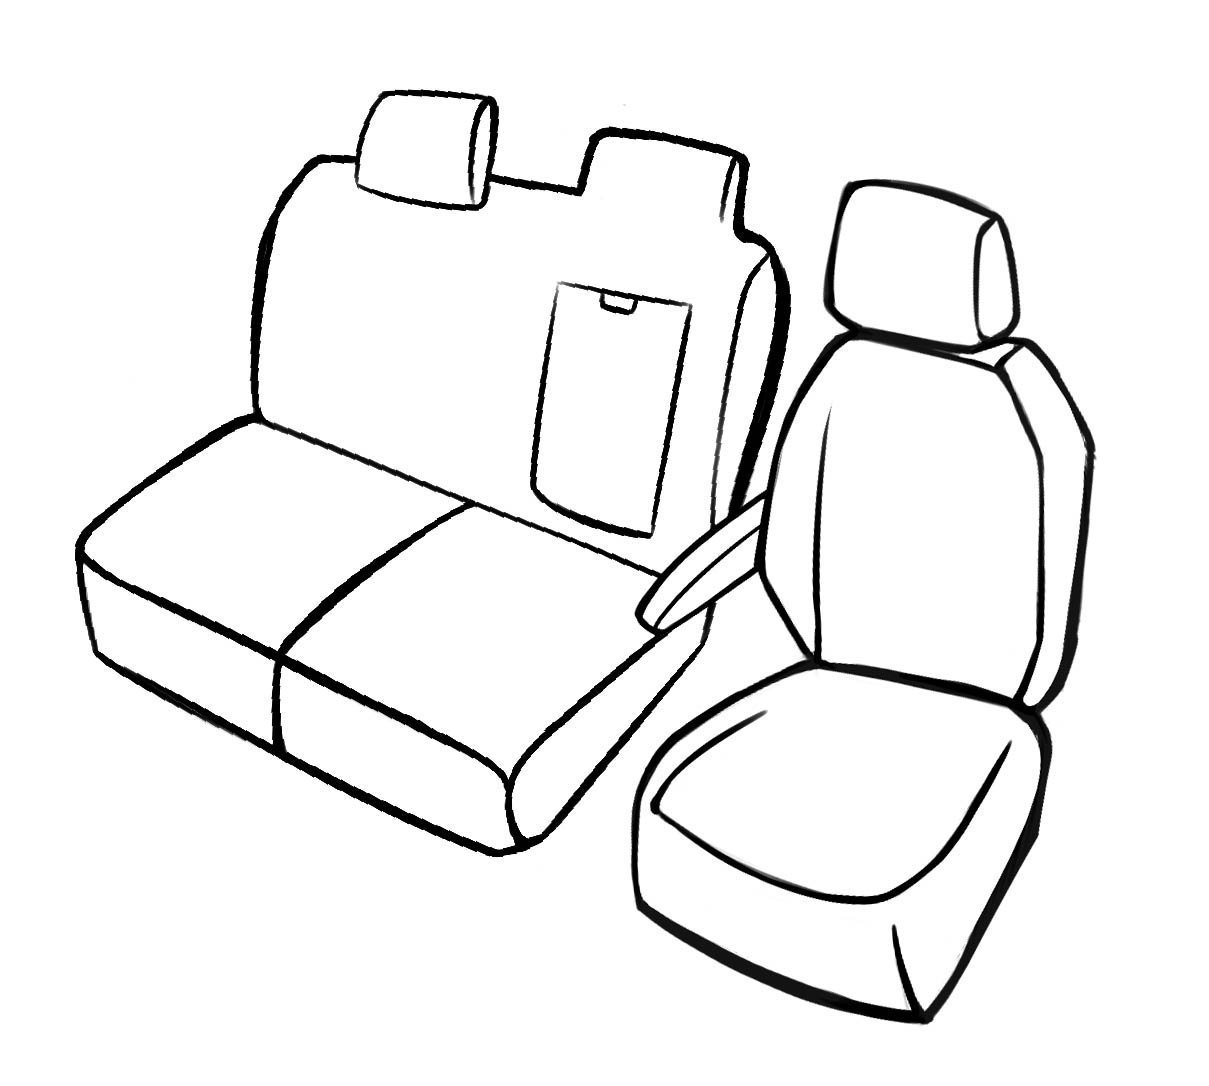 Premium Autostoelbekleding compatibel met Peugeot Expert 2016-Vandaag, 1 enkel stoelbekleding front + Armsteunbeschermer, 1 Dubbele bankhoes